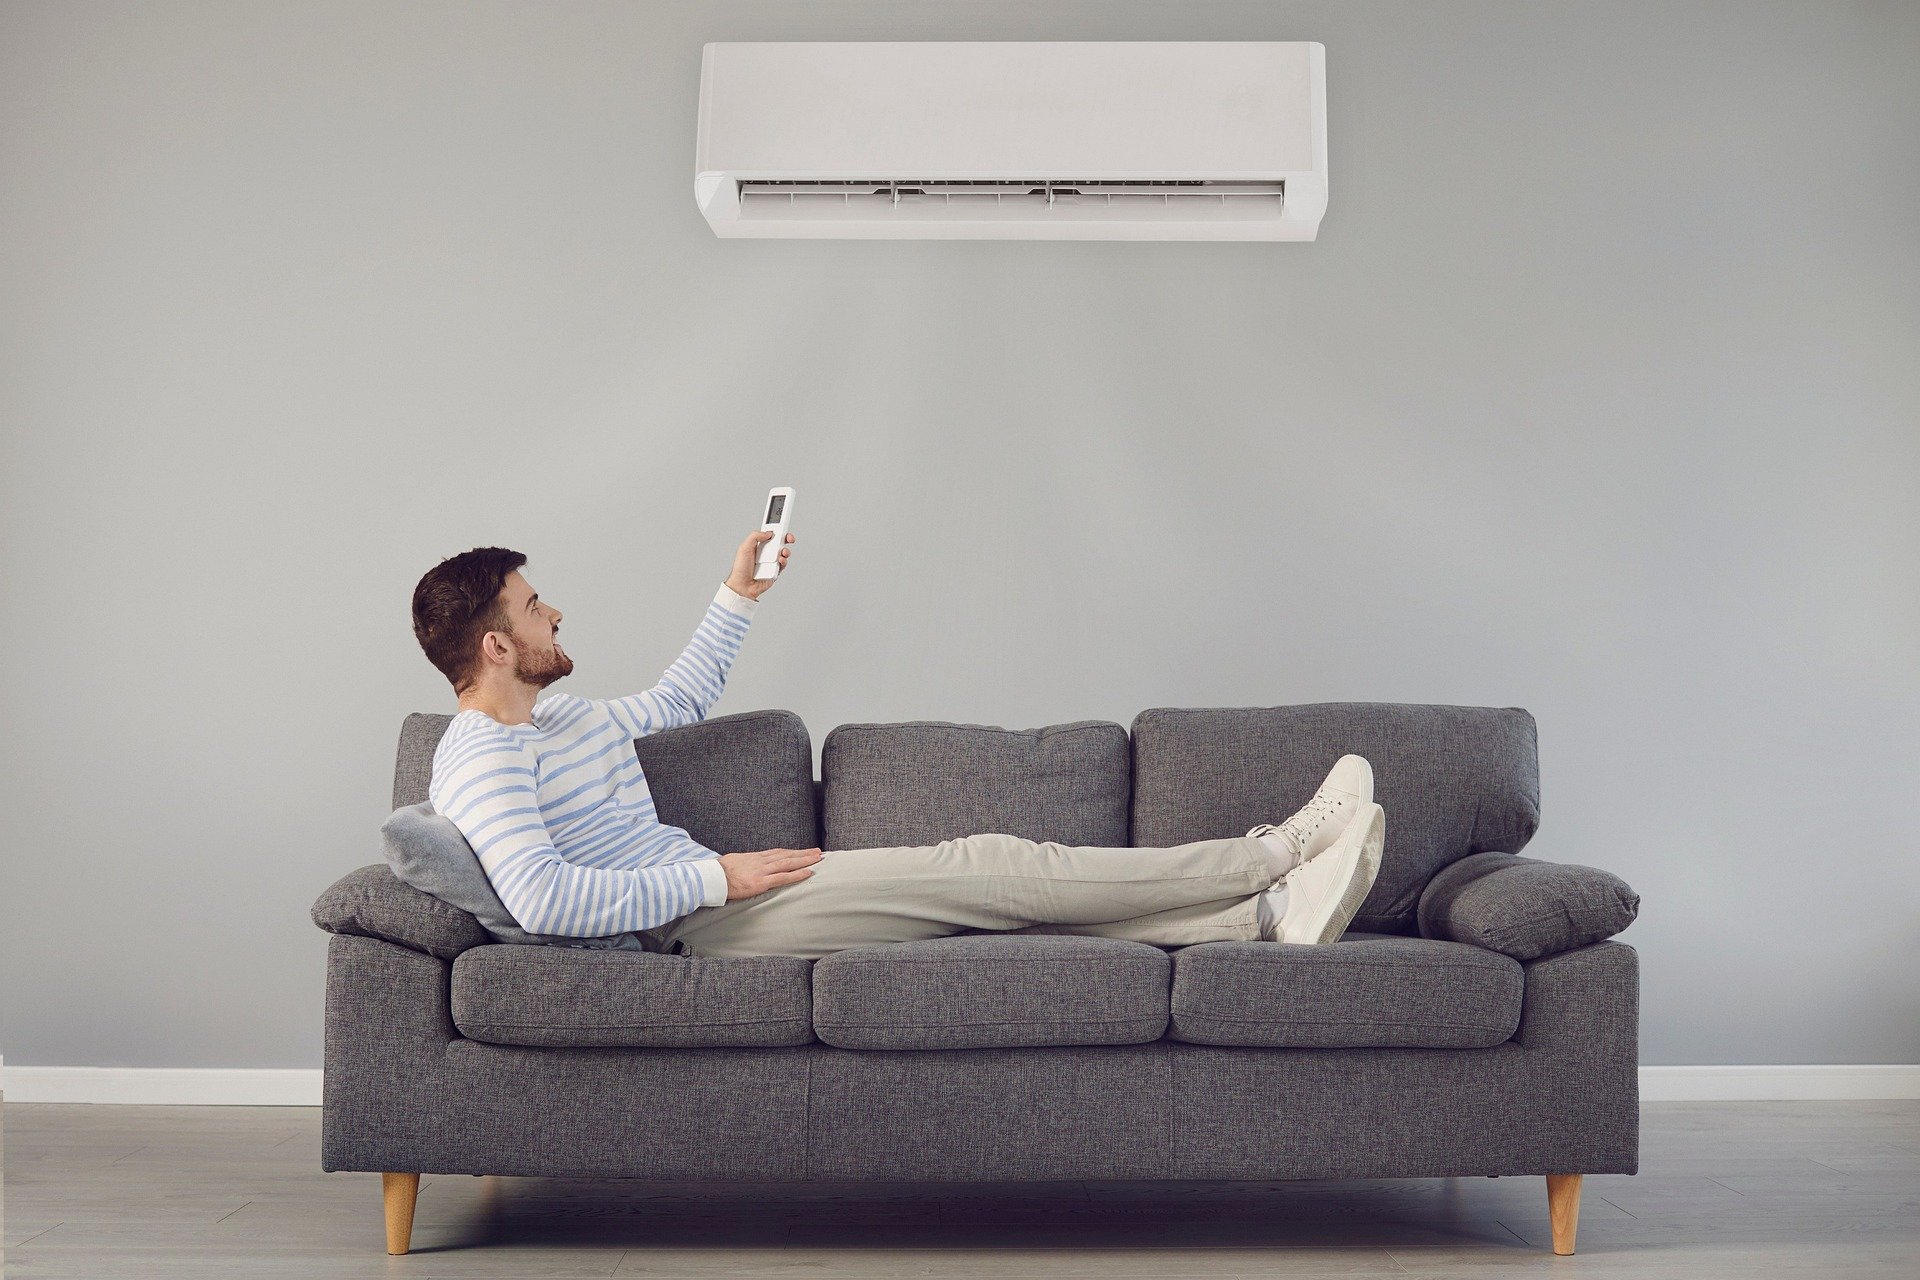 כיצד לשפר איכות האוויר בבית עם מערכת מיזוג אוויר מתקדמת